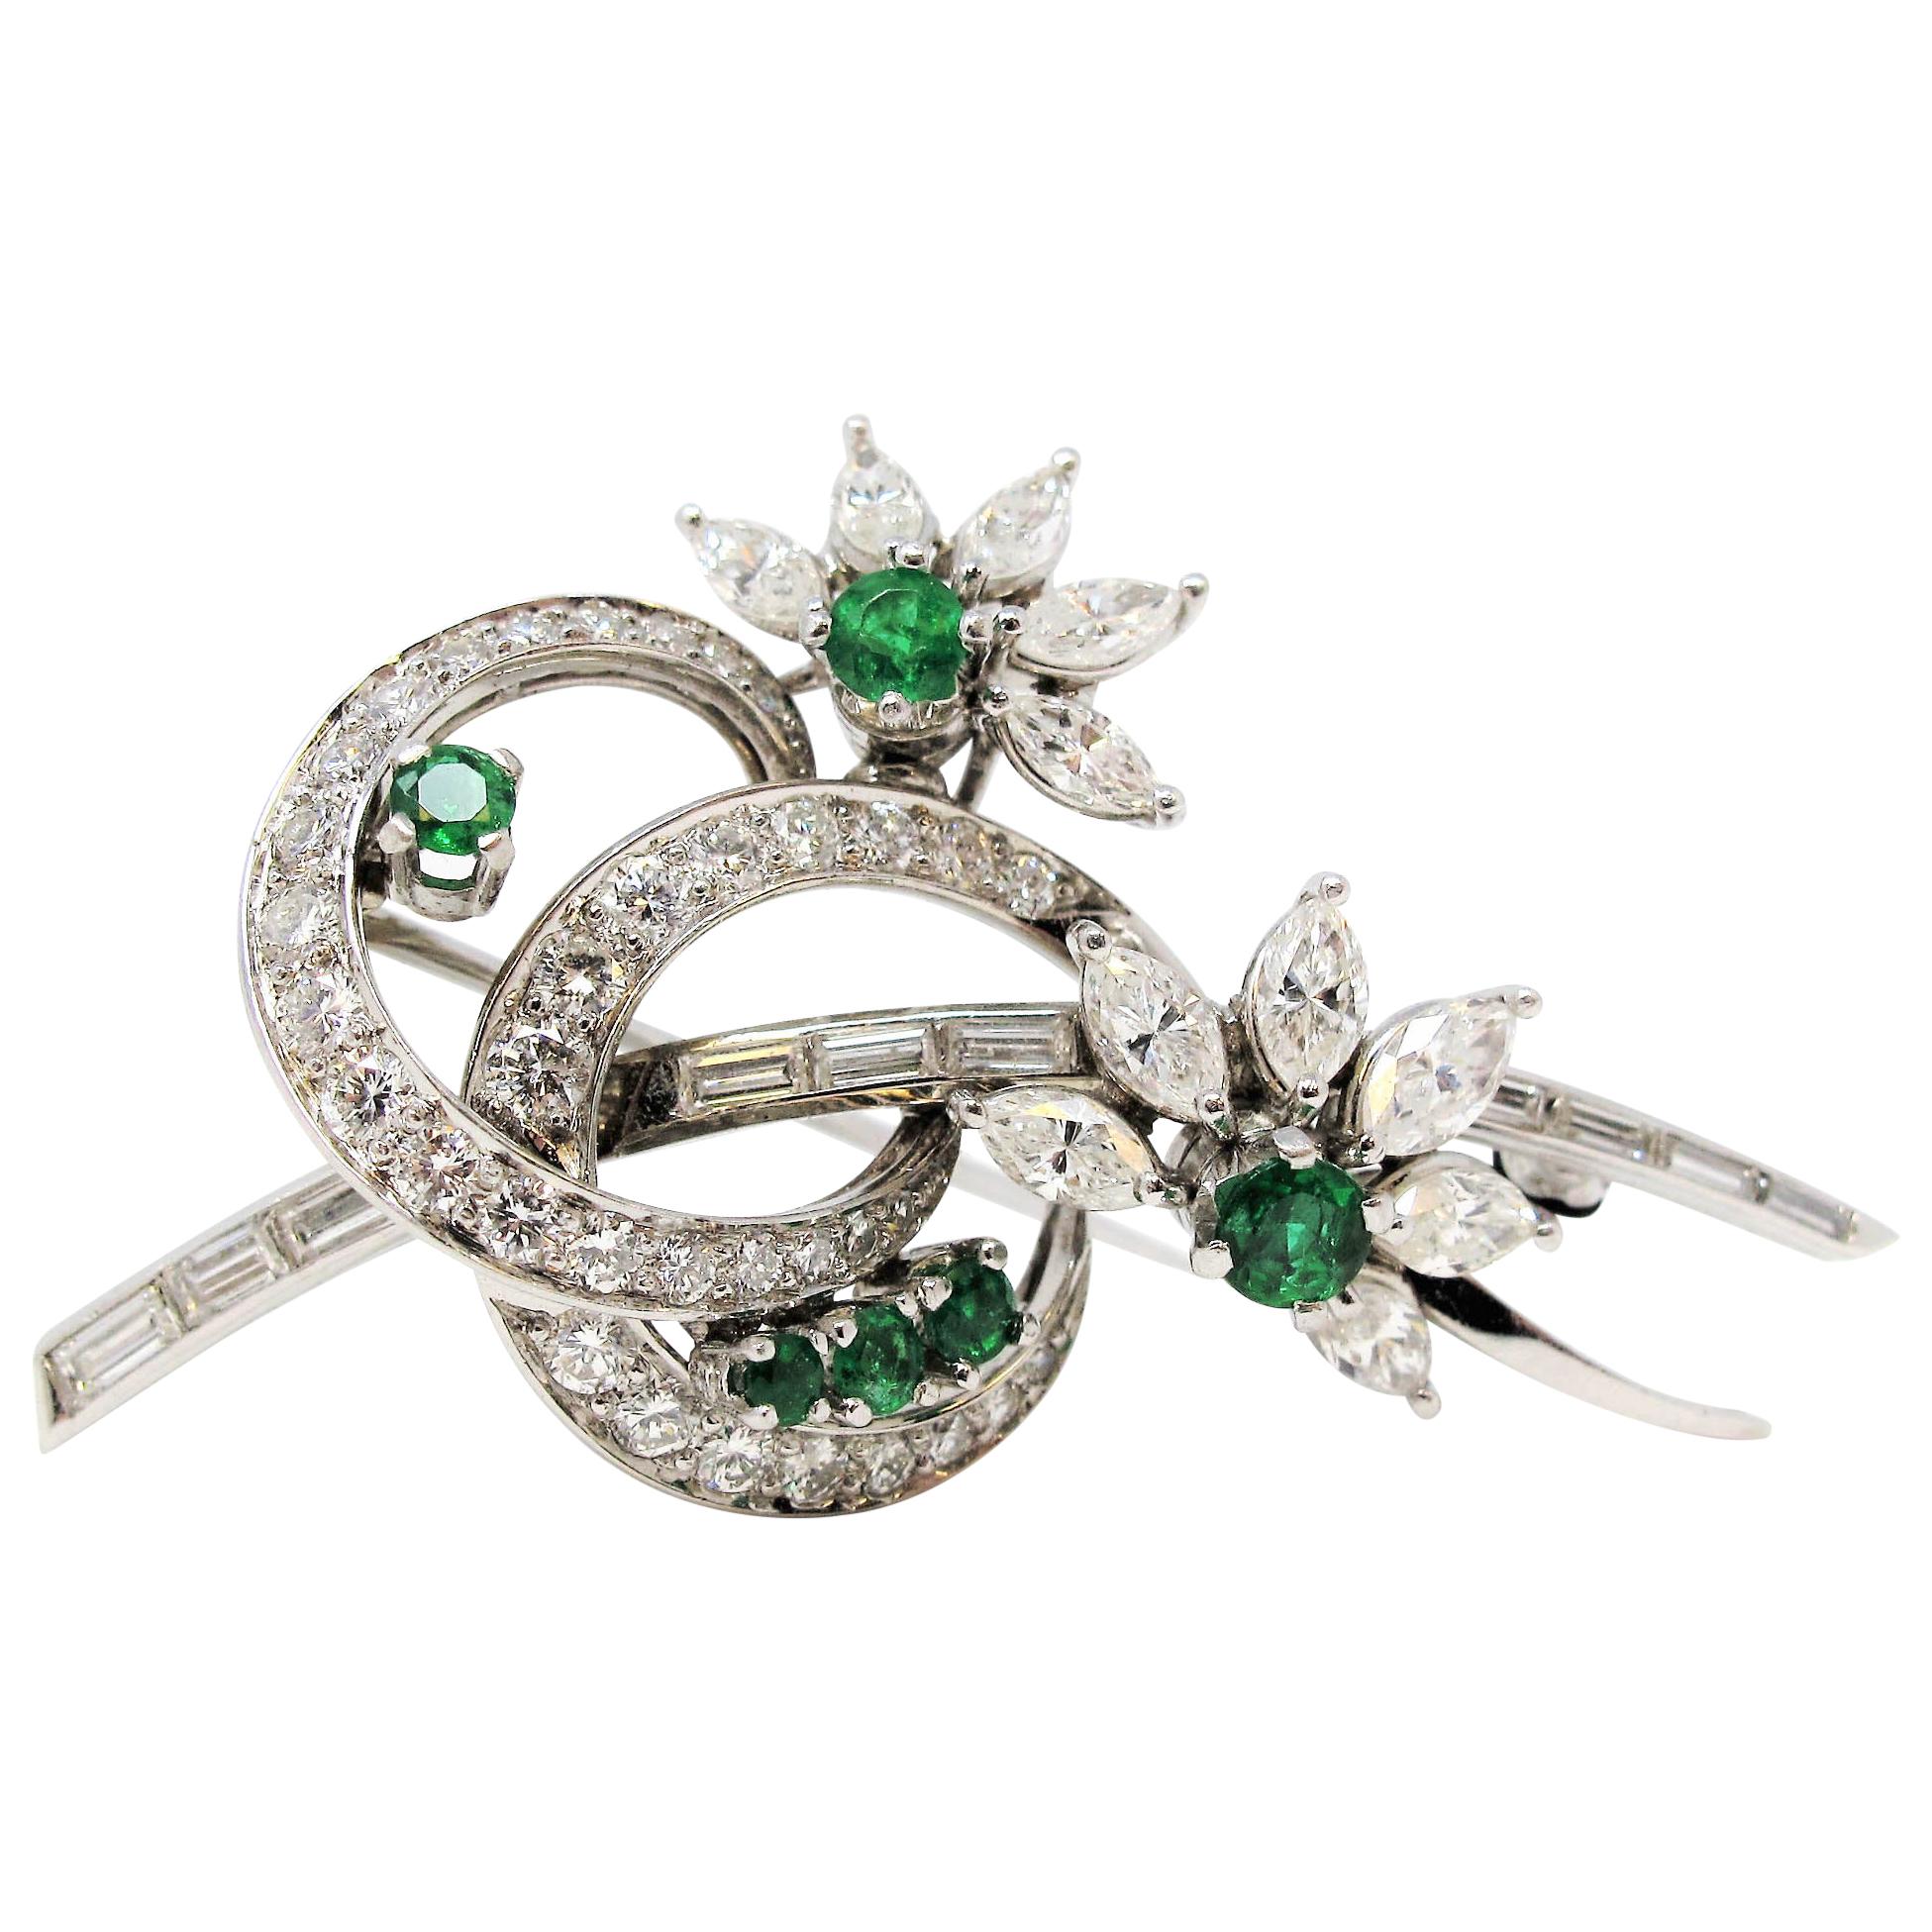 Platinbrosche mit Smaragd und Diamanten in verschiedenen Formen, wirbelndes Design mit Blumen